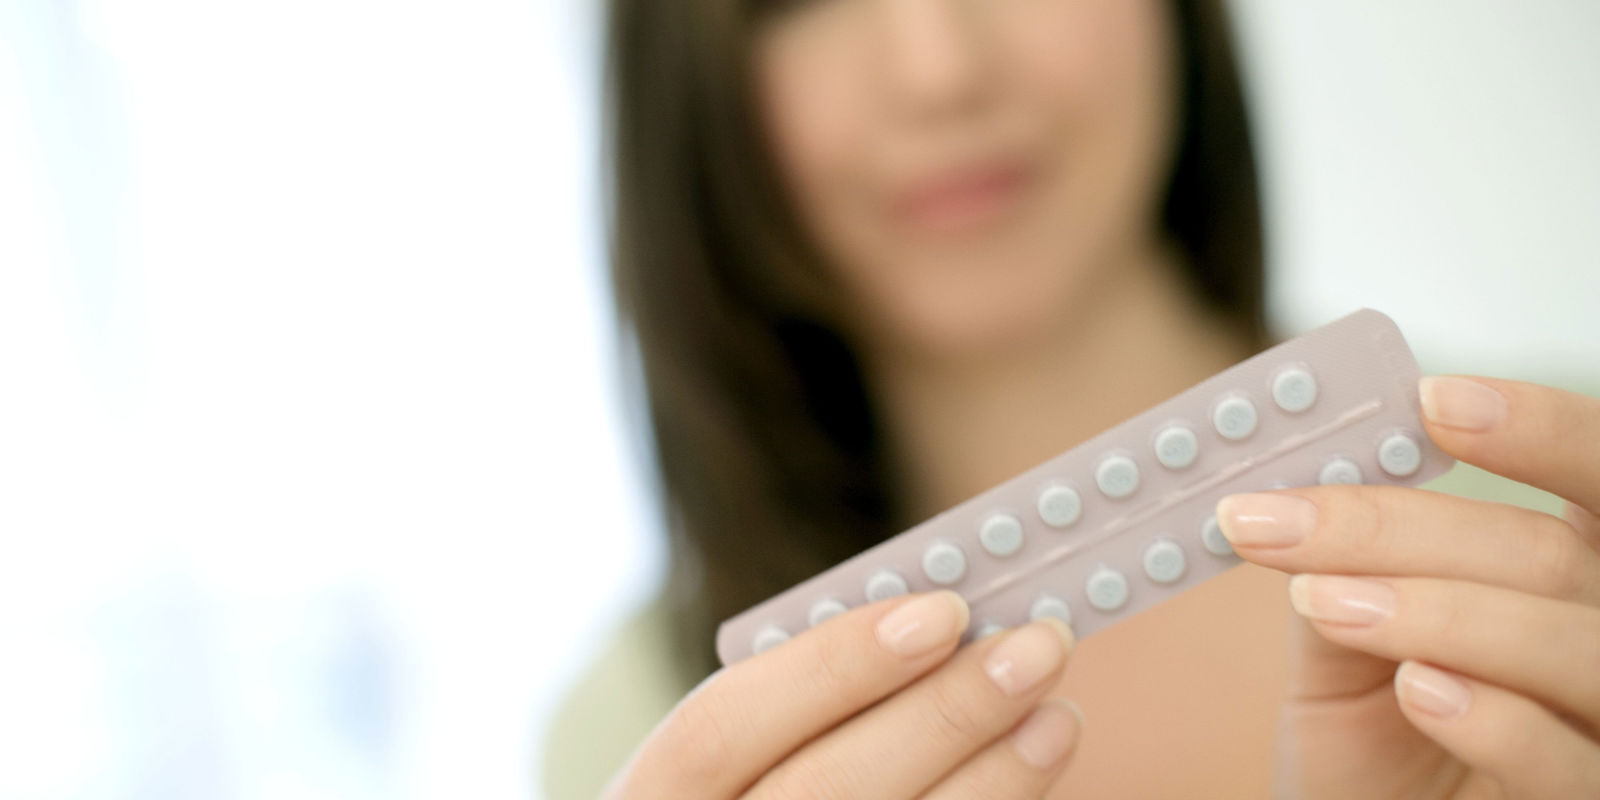 Οι γυναίκες με διαβήτη μπορούν άφοβα να λαμβάνουν αντισυλληπτικά